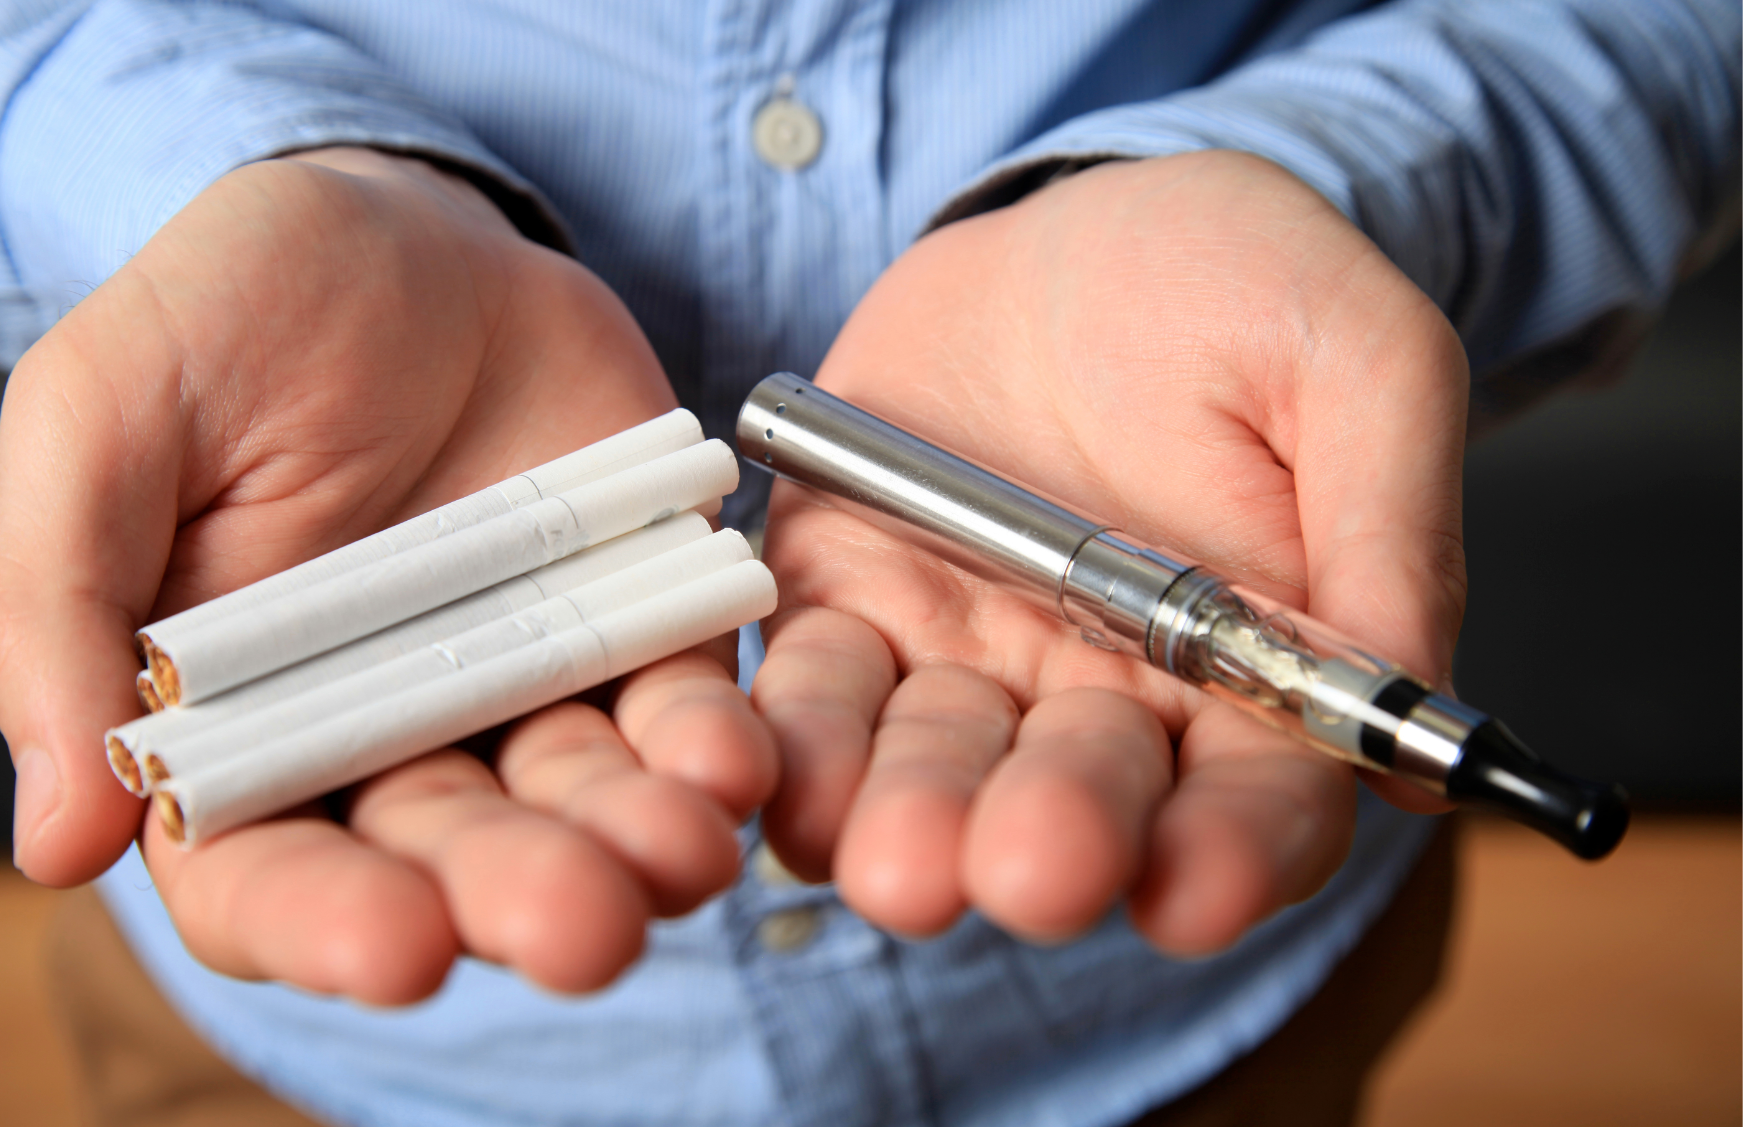 Forskare kritiserar e-cigaretter som rökavvänjningsmetod